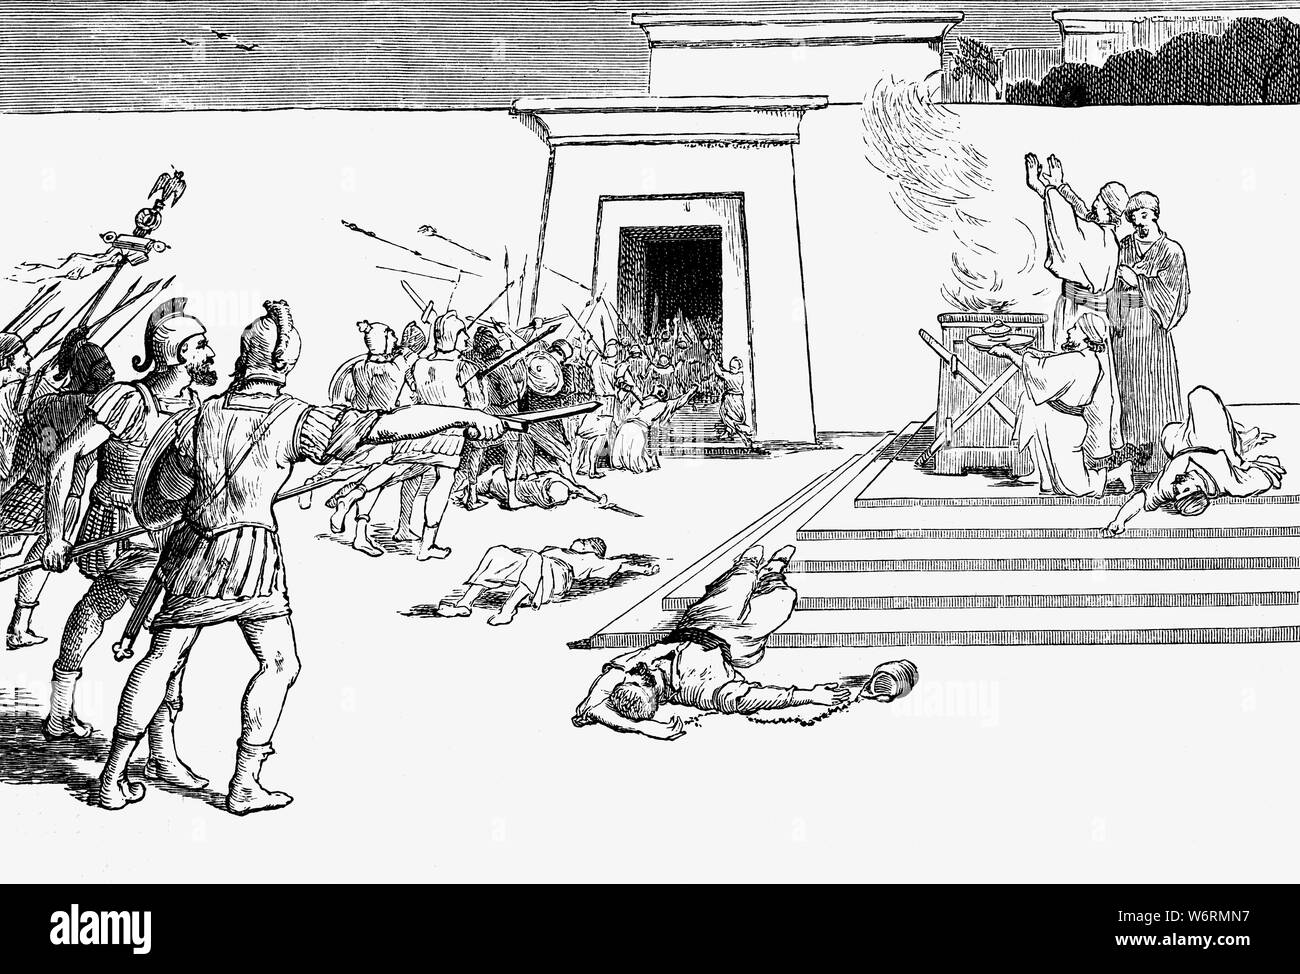 Pompeius der Große im Tempel des Jeusalem nach der Belagerung von Jerusalem (63 v. Chr.), dass er während seiner Kampagnen im Osten aufgetreten ist, und kurz nach seinem erfolgreichen Abschluss der dritten Mithridatic Krieg. Pompeius war gebeten worden, in einen Disput über die Vererbung auf dem Thron, die in einen Krieg zwischen Hyrkanus II und Aristobulus II für den Thron des Hasmonean Kingdom drehte sich zu intervenieren. Seine Eroberung von Jerusalem, aber auch das Ende der jüdischen Unabhängigkeit geschrieben und die Einbeziehung von Judäa als Client Königreich der Römischen Republik. Stockfoto